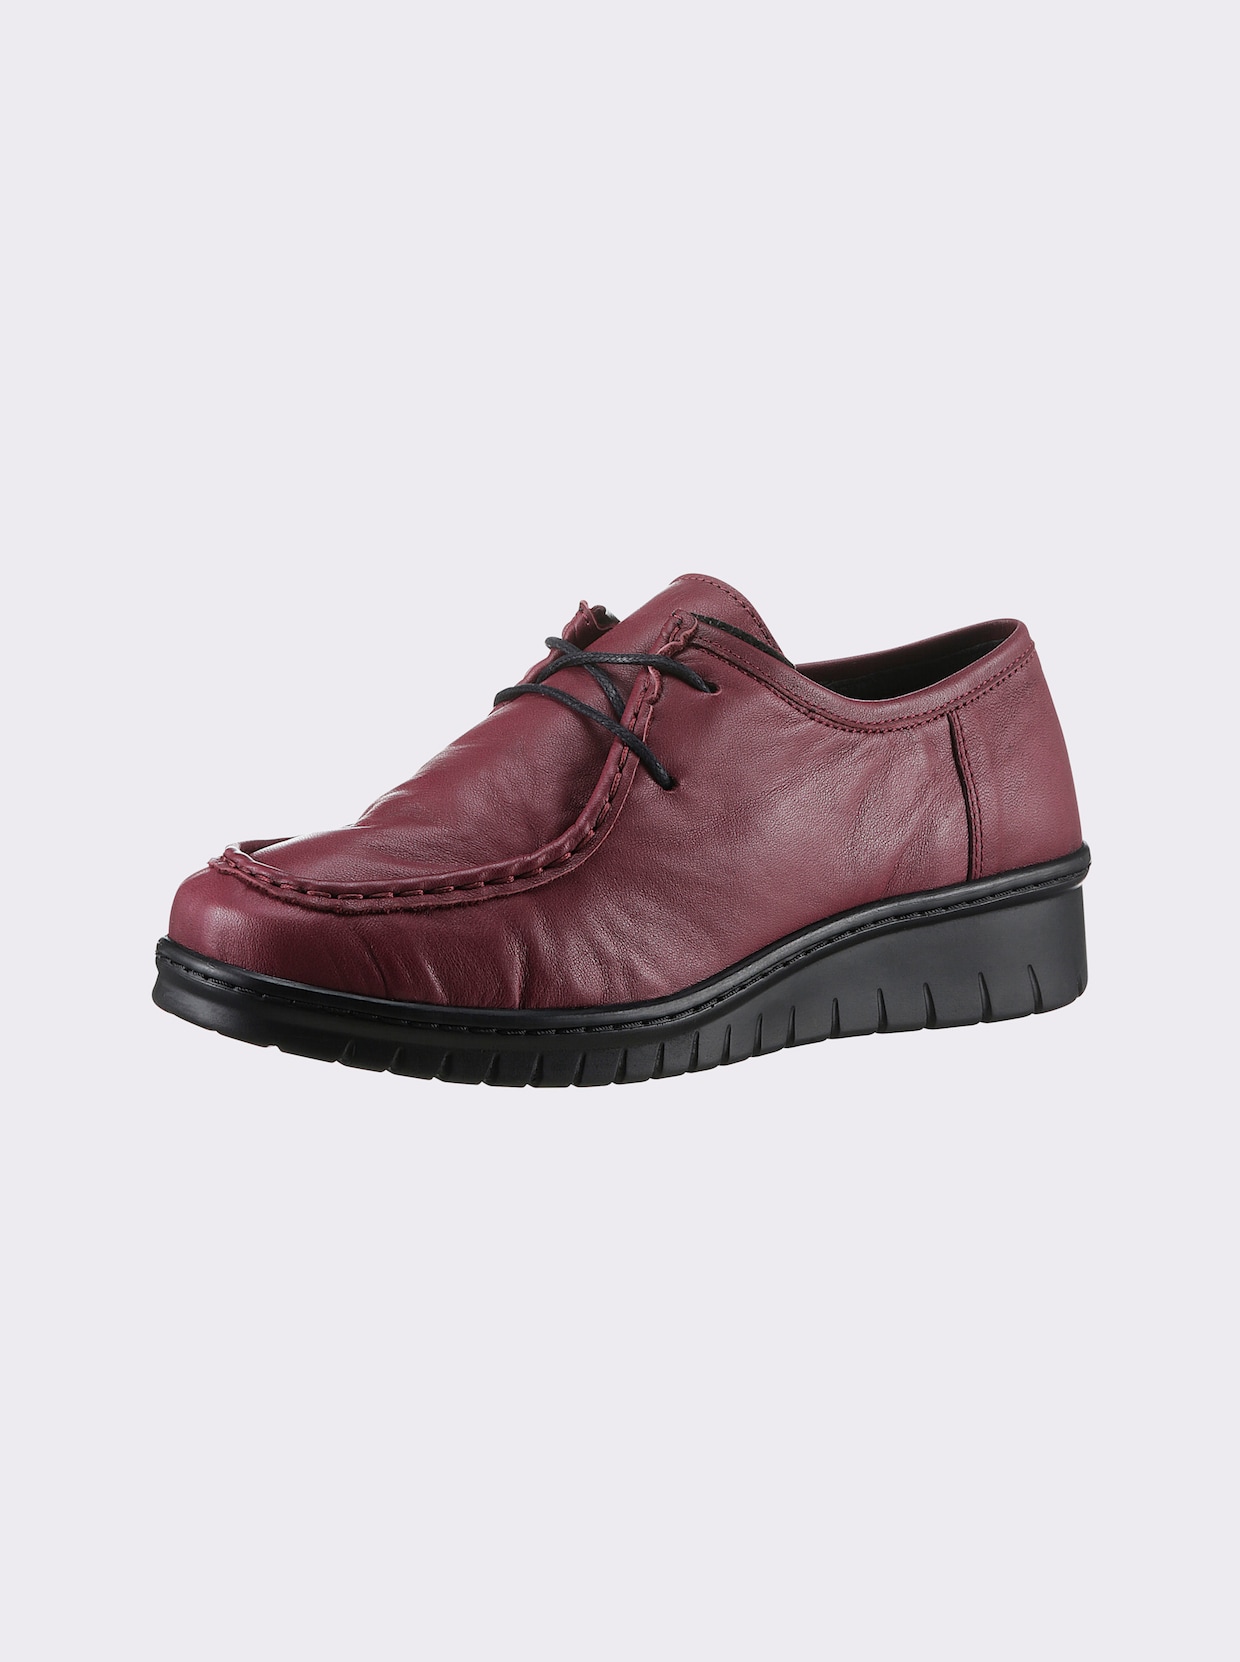 airsoft modern+ Chaussures à lacets - bordeaux